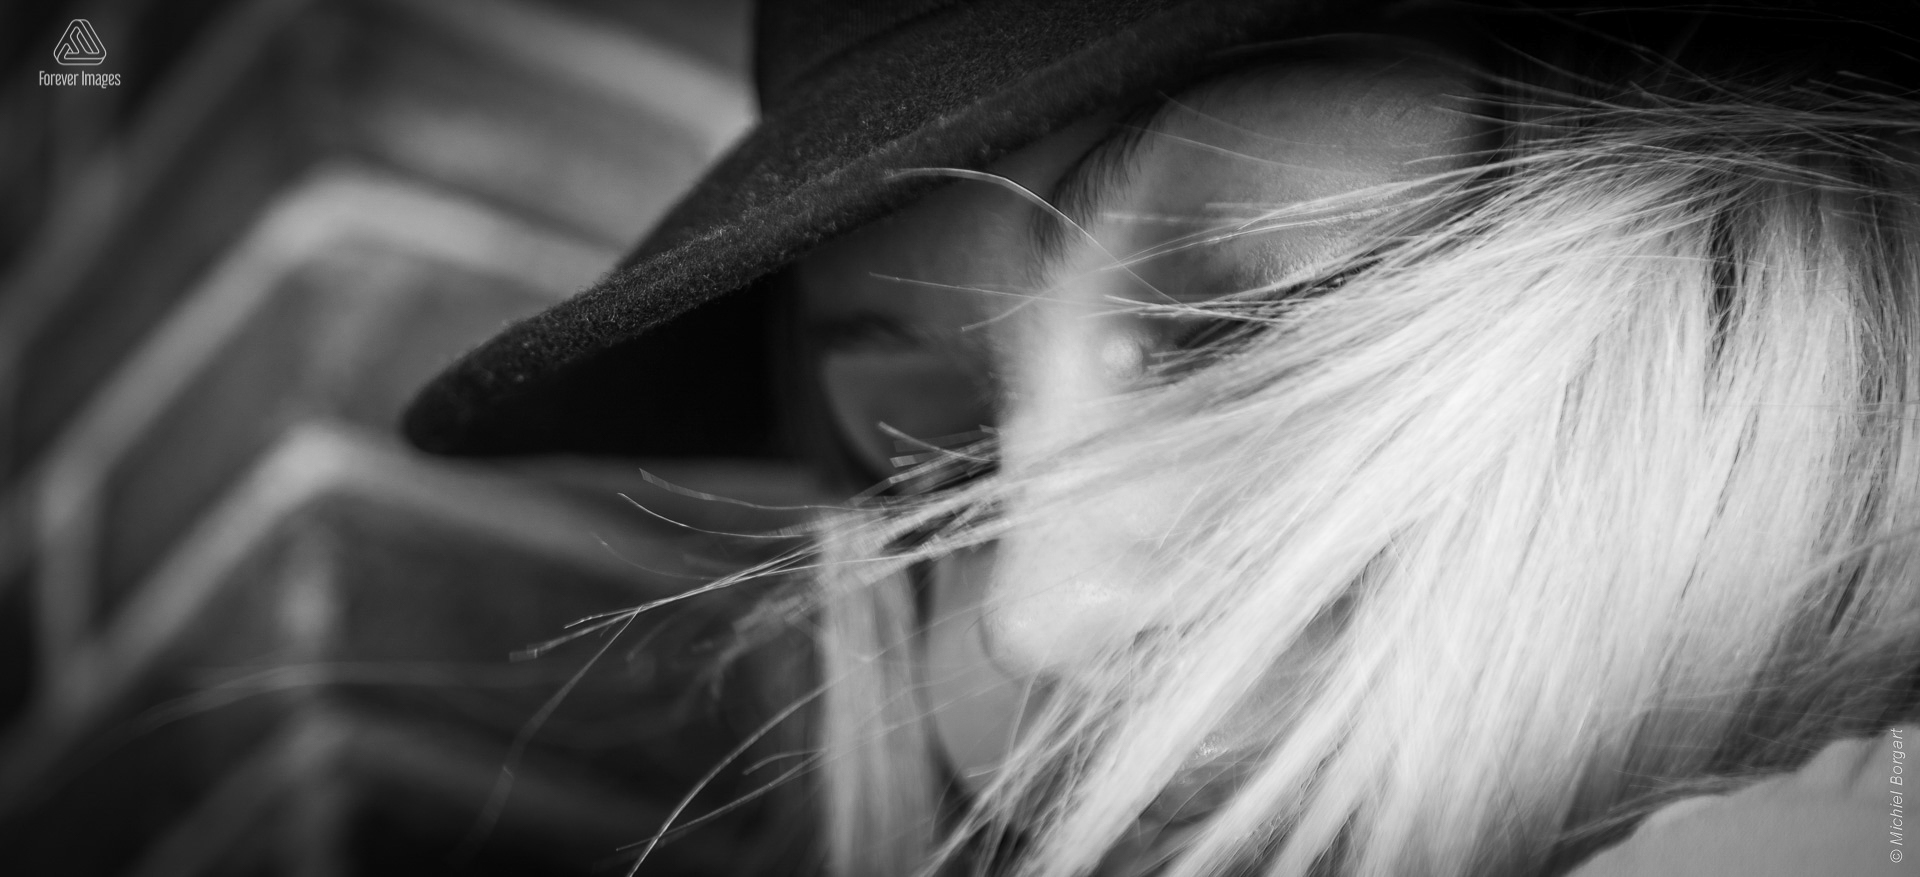 Portretfoto zwart-wit jonge dame hoed verscholen achter blonde haren | Porscha Luna de Jong Happyhappyjoyjoy | Portretfotograaf Michiel Borgart - Forever Images.